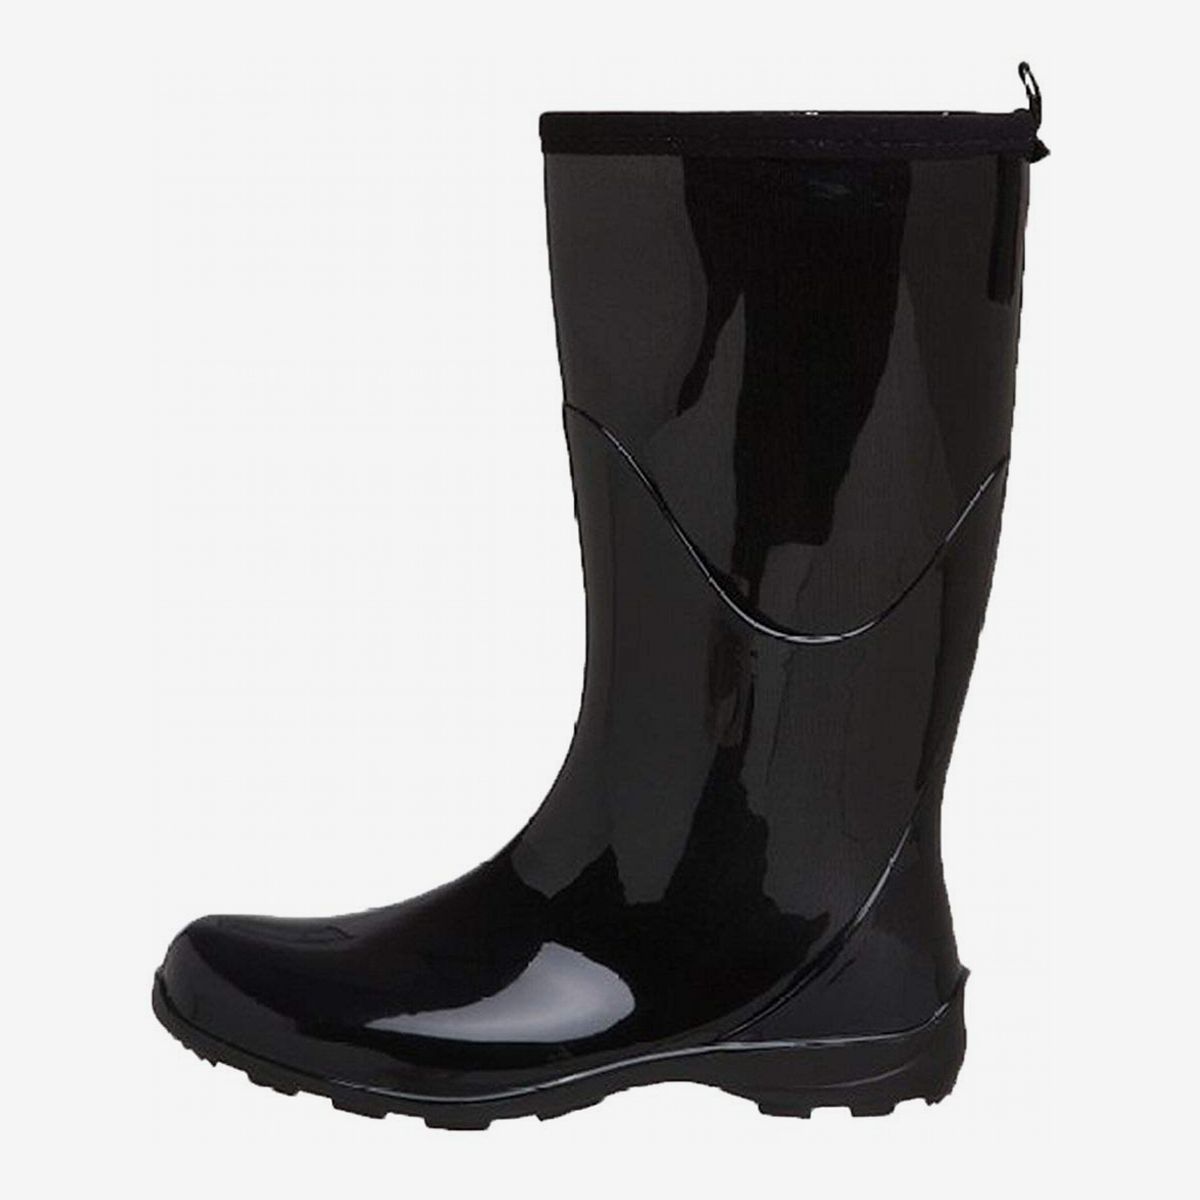 12 Best Rubber Rain Boots for Women 